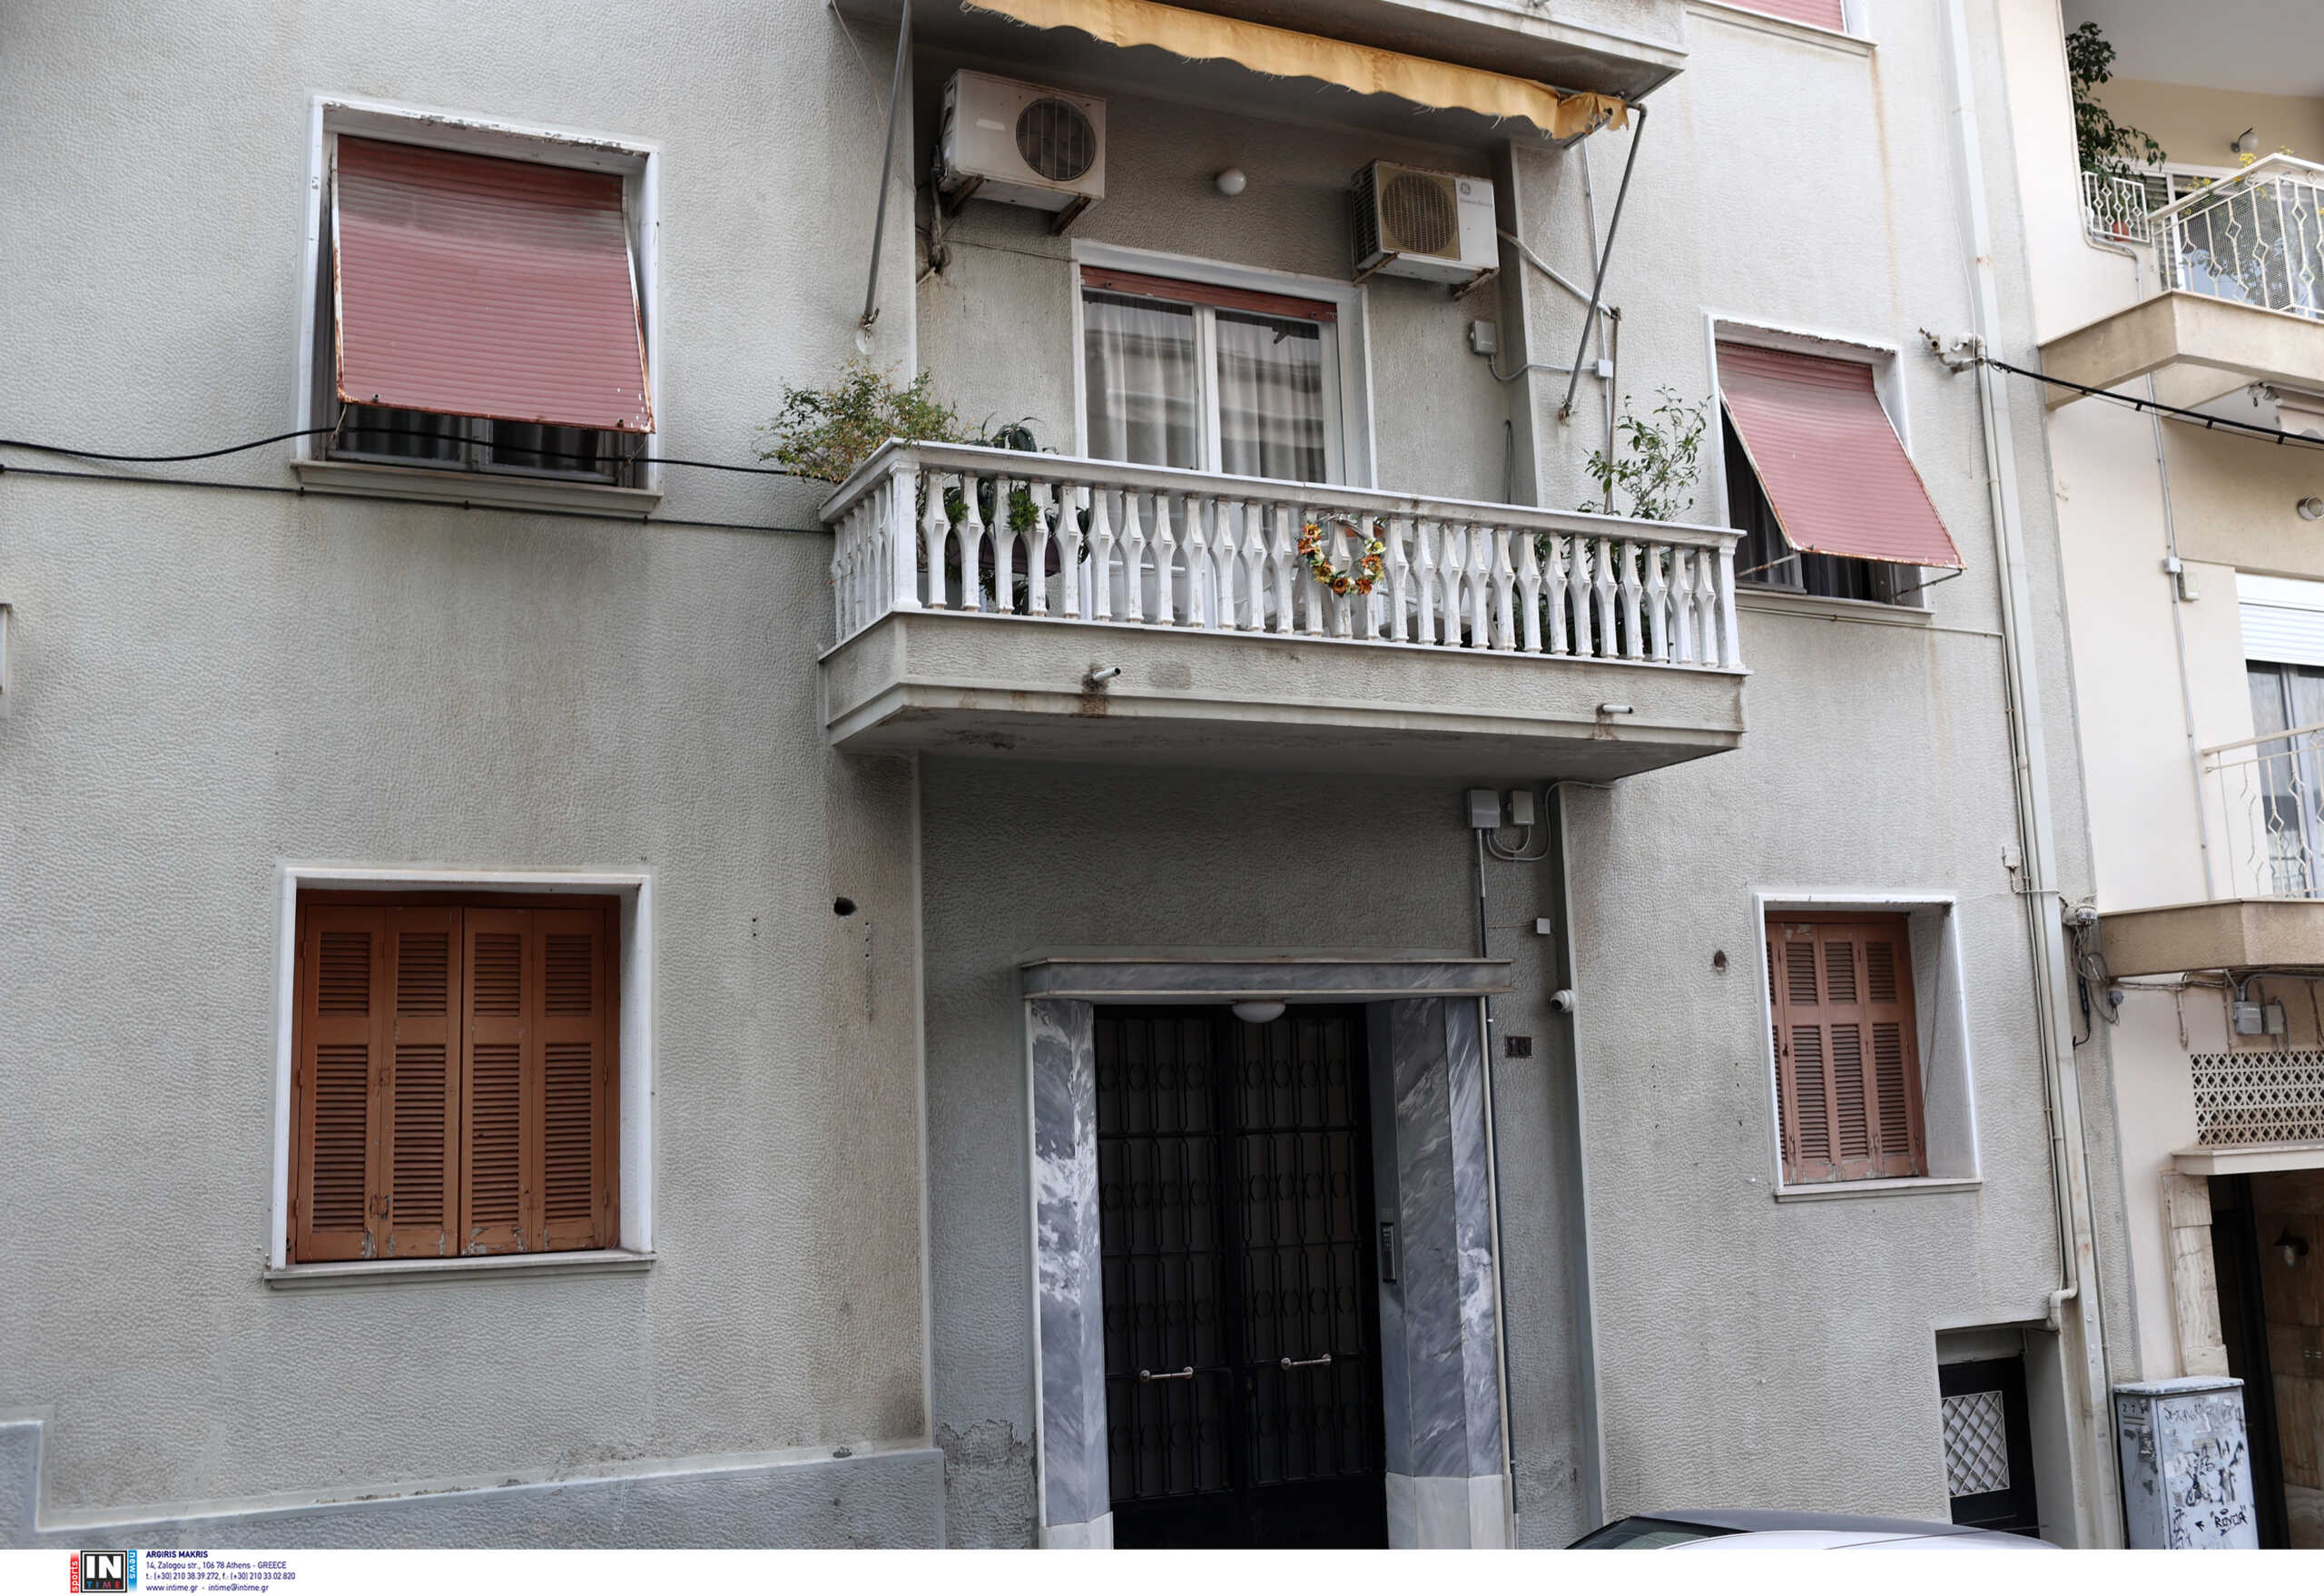 Γυναικοκτονία στον Πειραιά: «Πριν μια εβδομάδα είχαμε ακούσει τσακωμούς» λέει μια γειτόνισσα του ζευγαριού στο newsit.gr